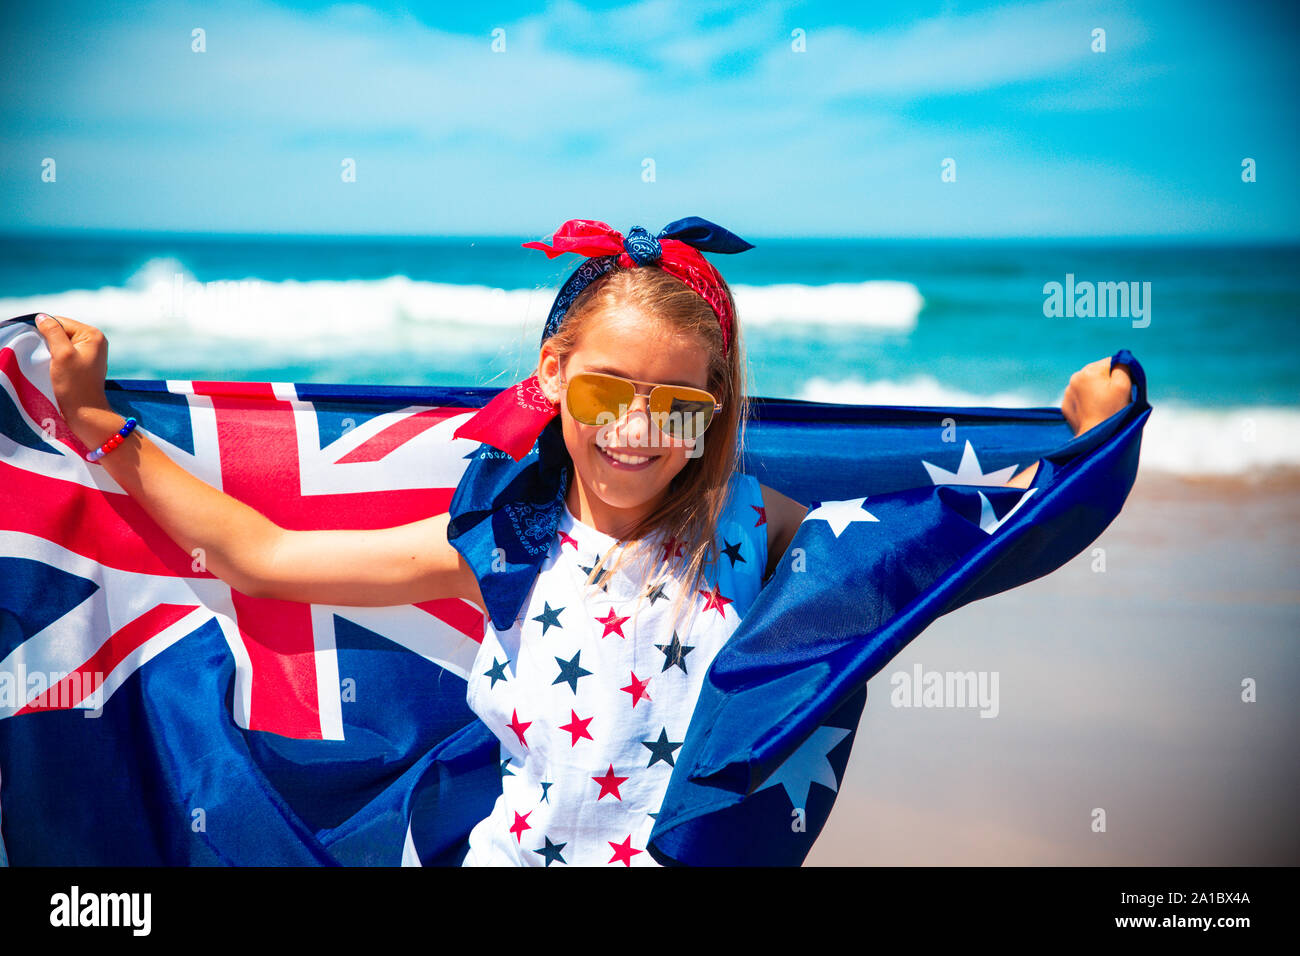 Happy Australian girl carries fluttering blue white red Australian flag against blue sky and ocean background Stock Photo